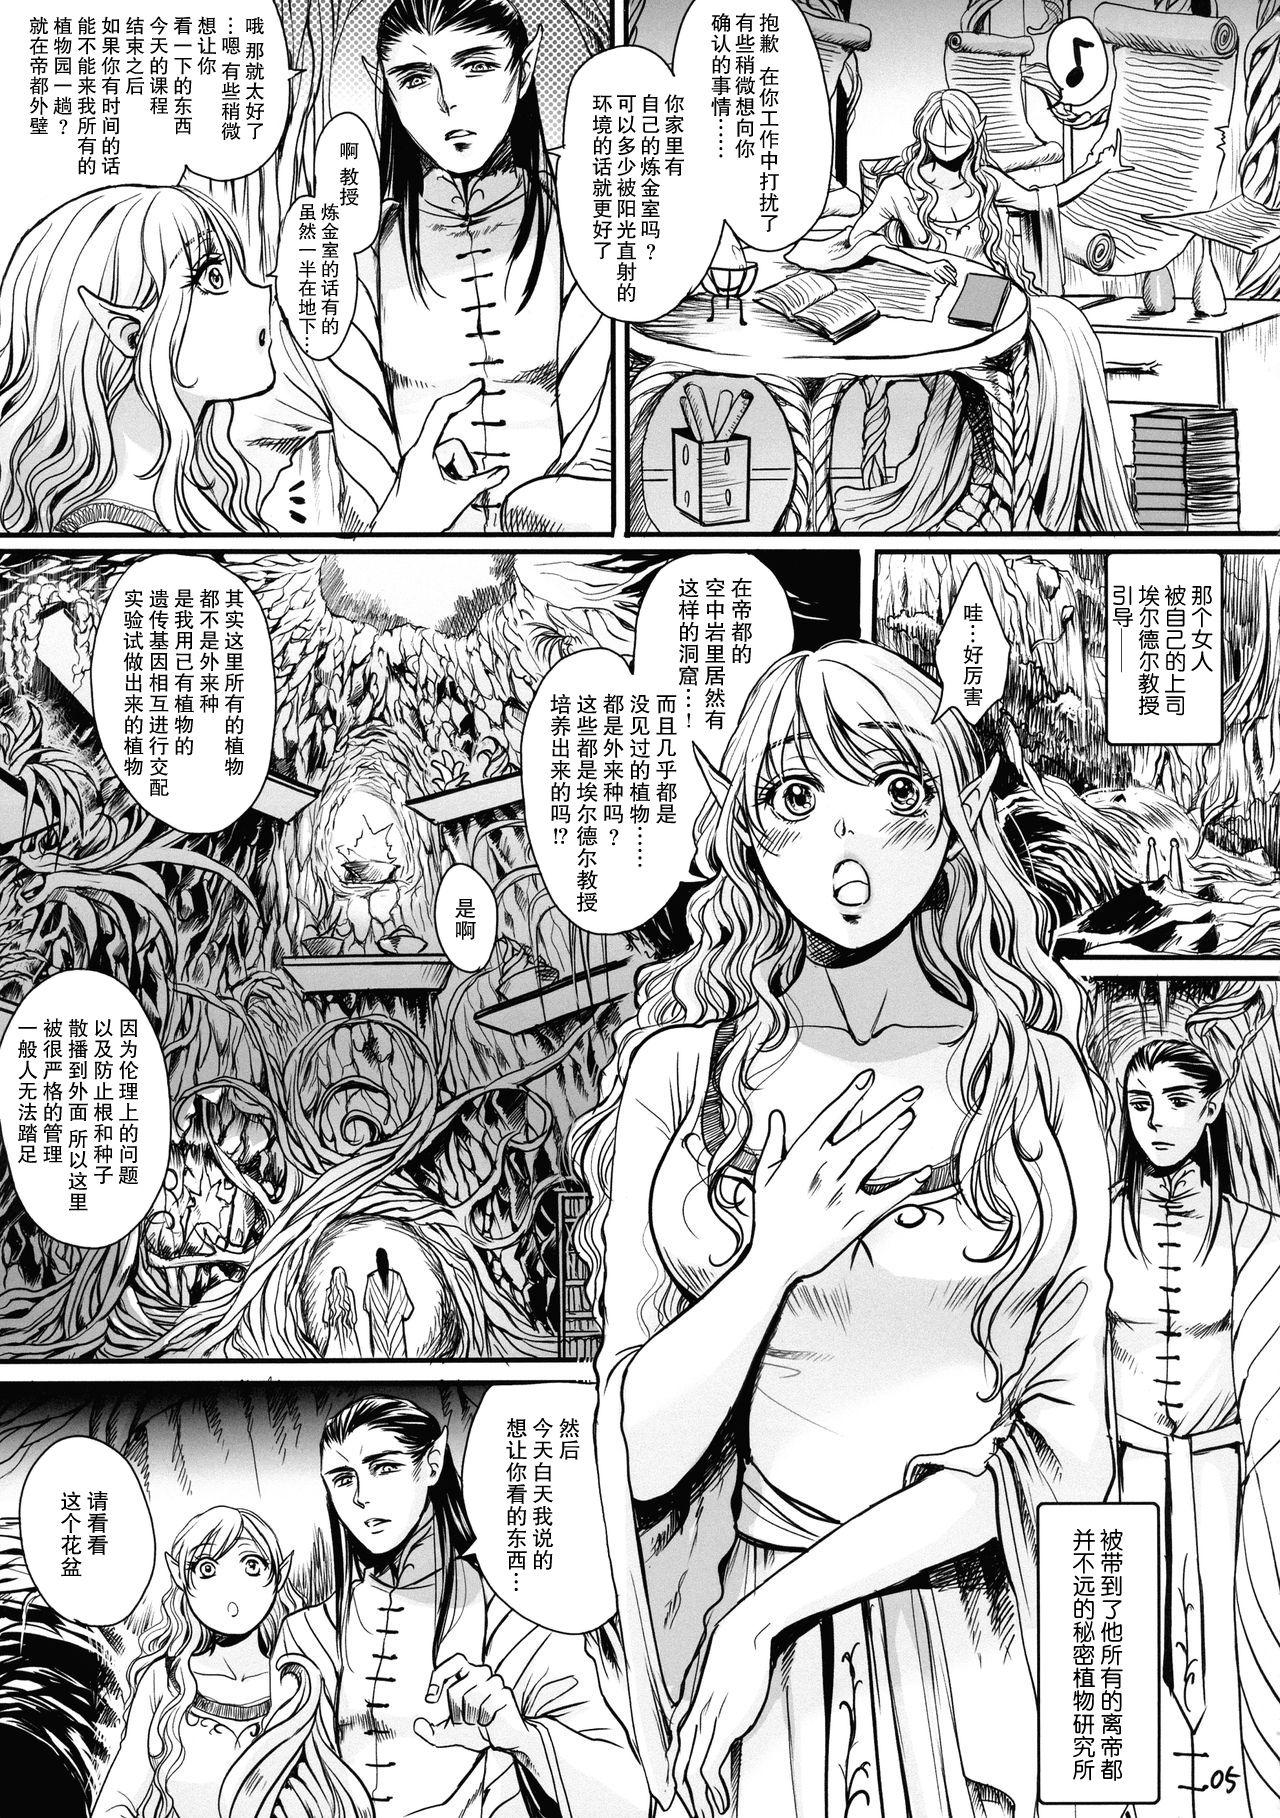 Botsu Manga "Kawaii Okusama" no Gokuyou Matome Hon + α 5